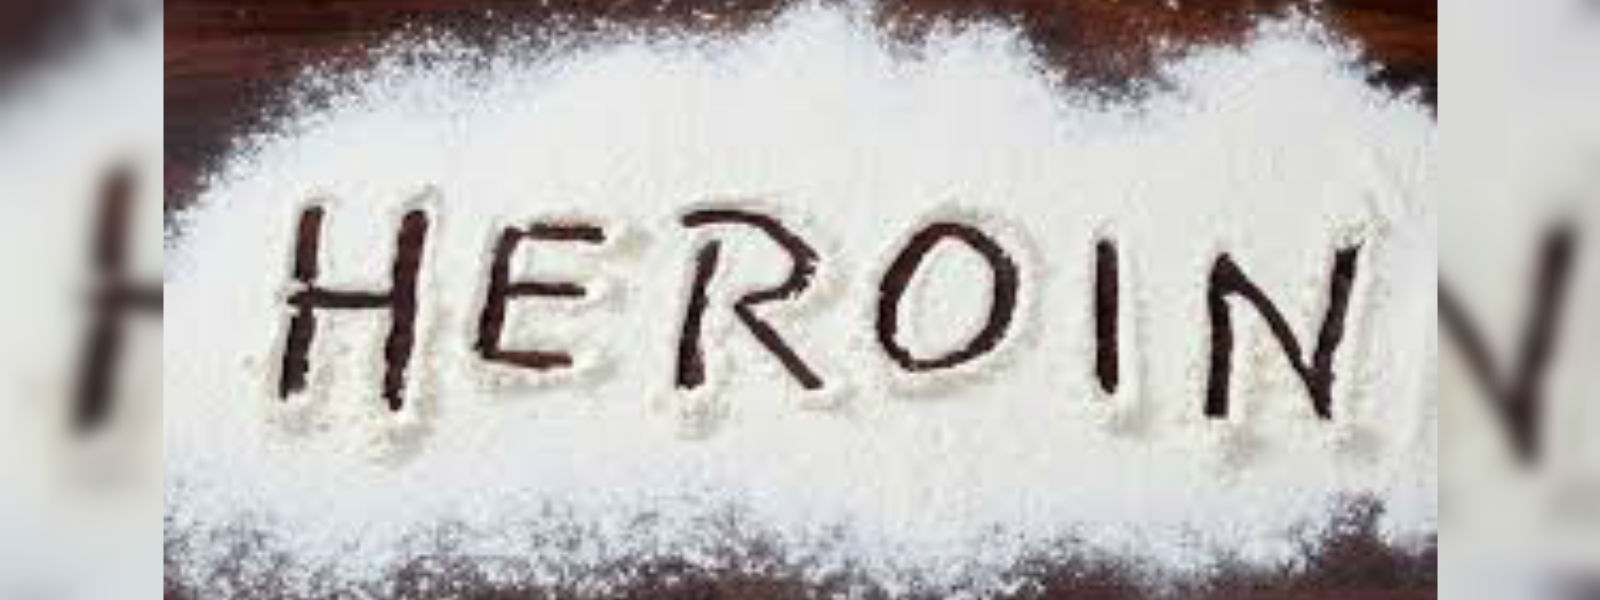 1.5kg of heroin busted in Pannipitiya 